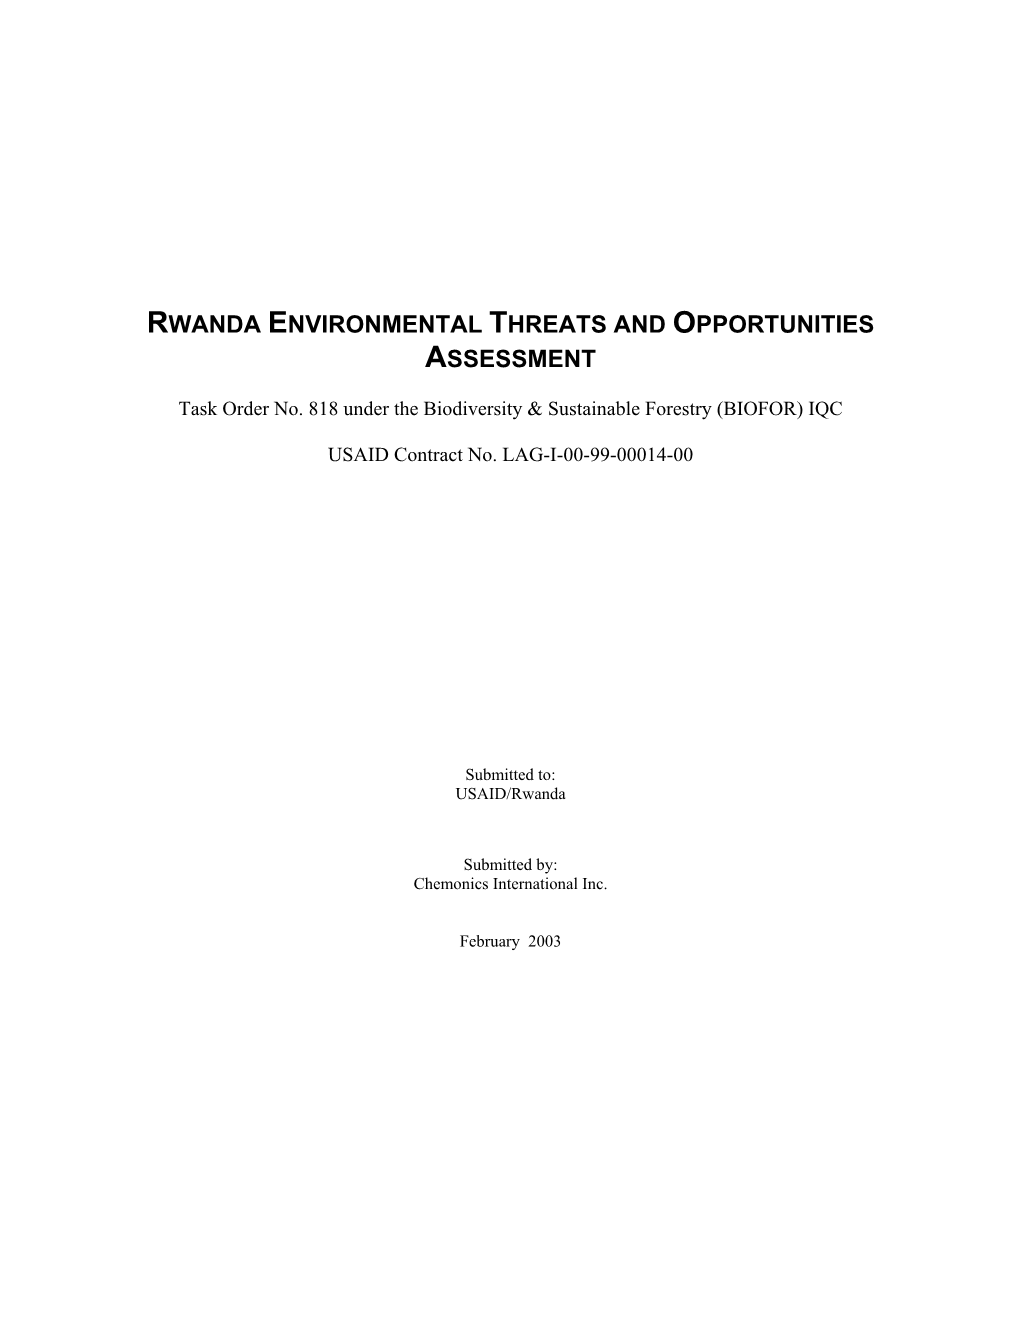 Rwanda Environmental Threats and Opportunities Assessment